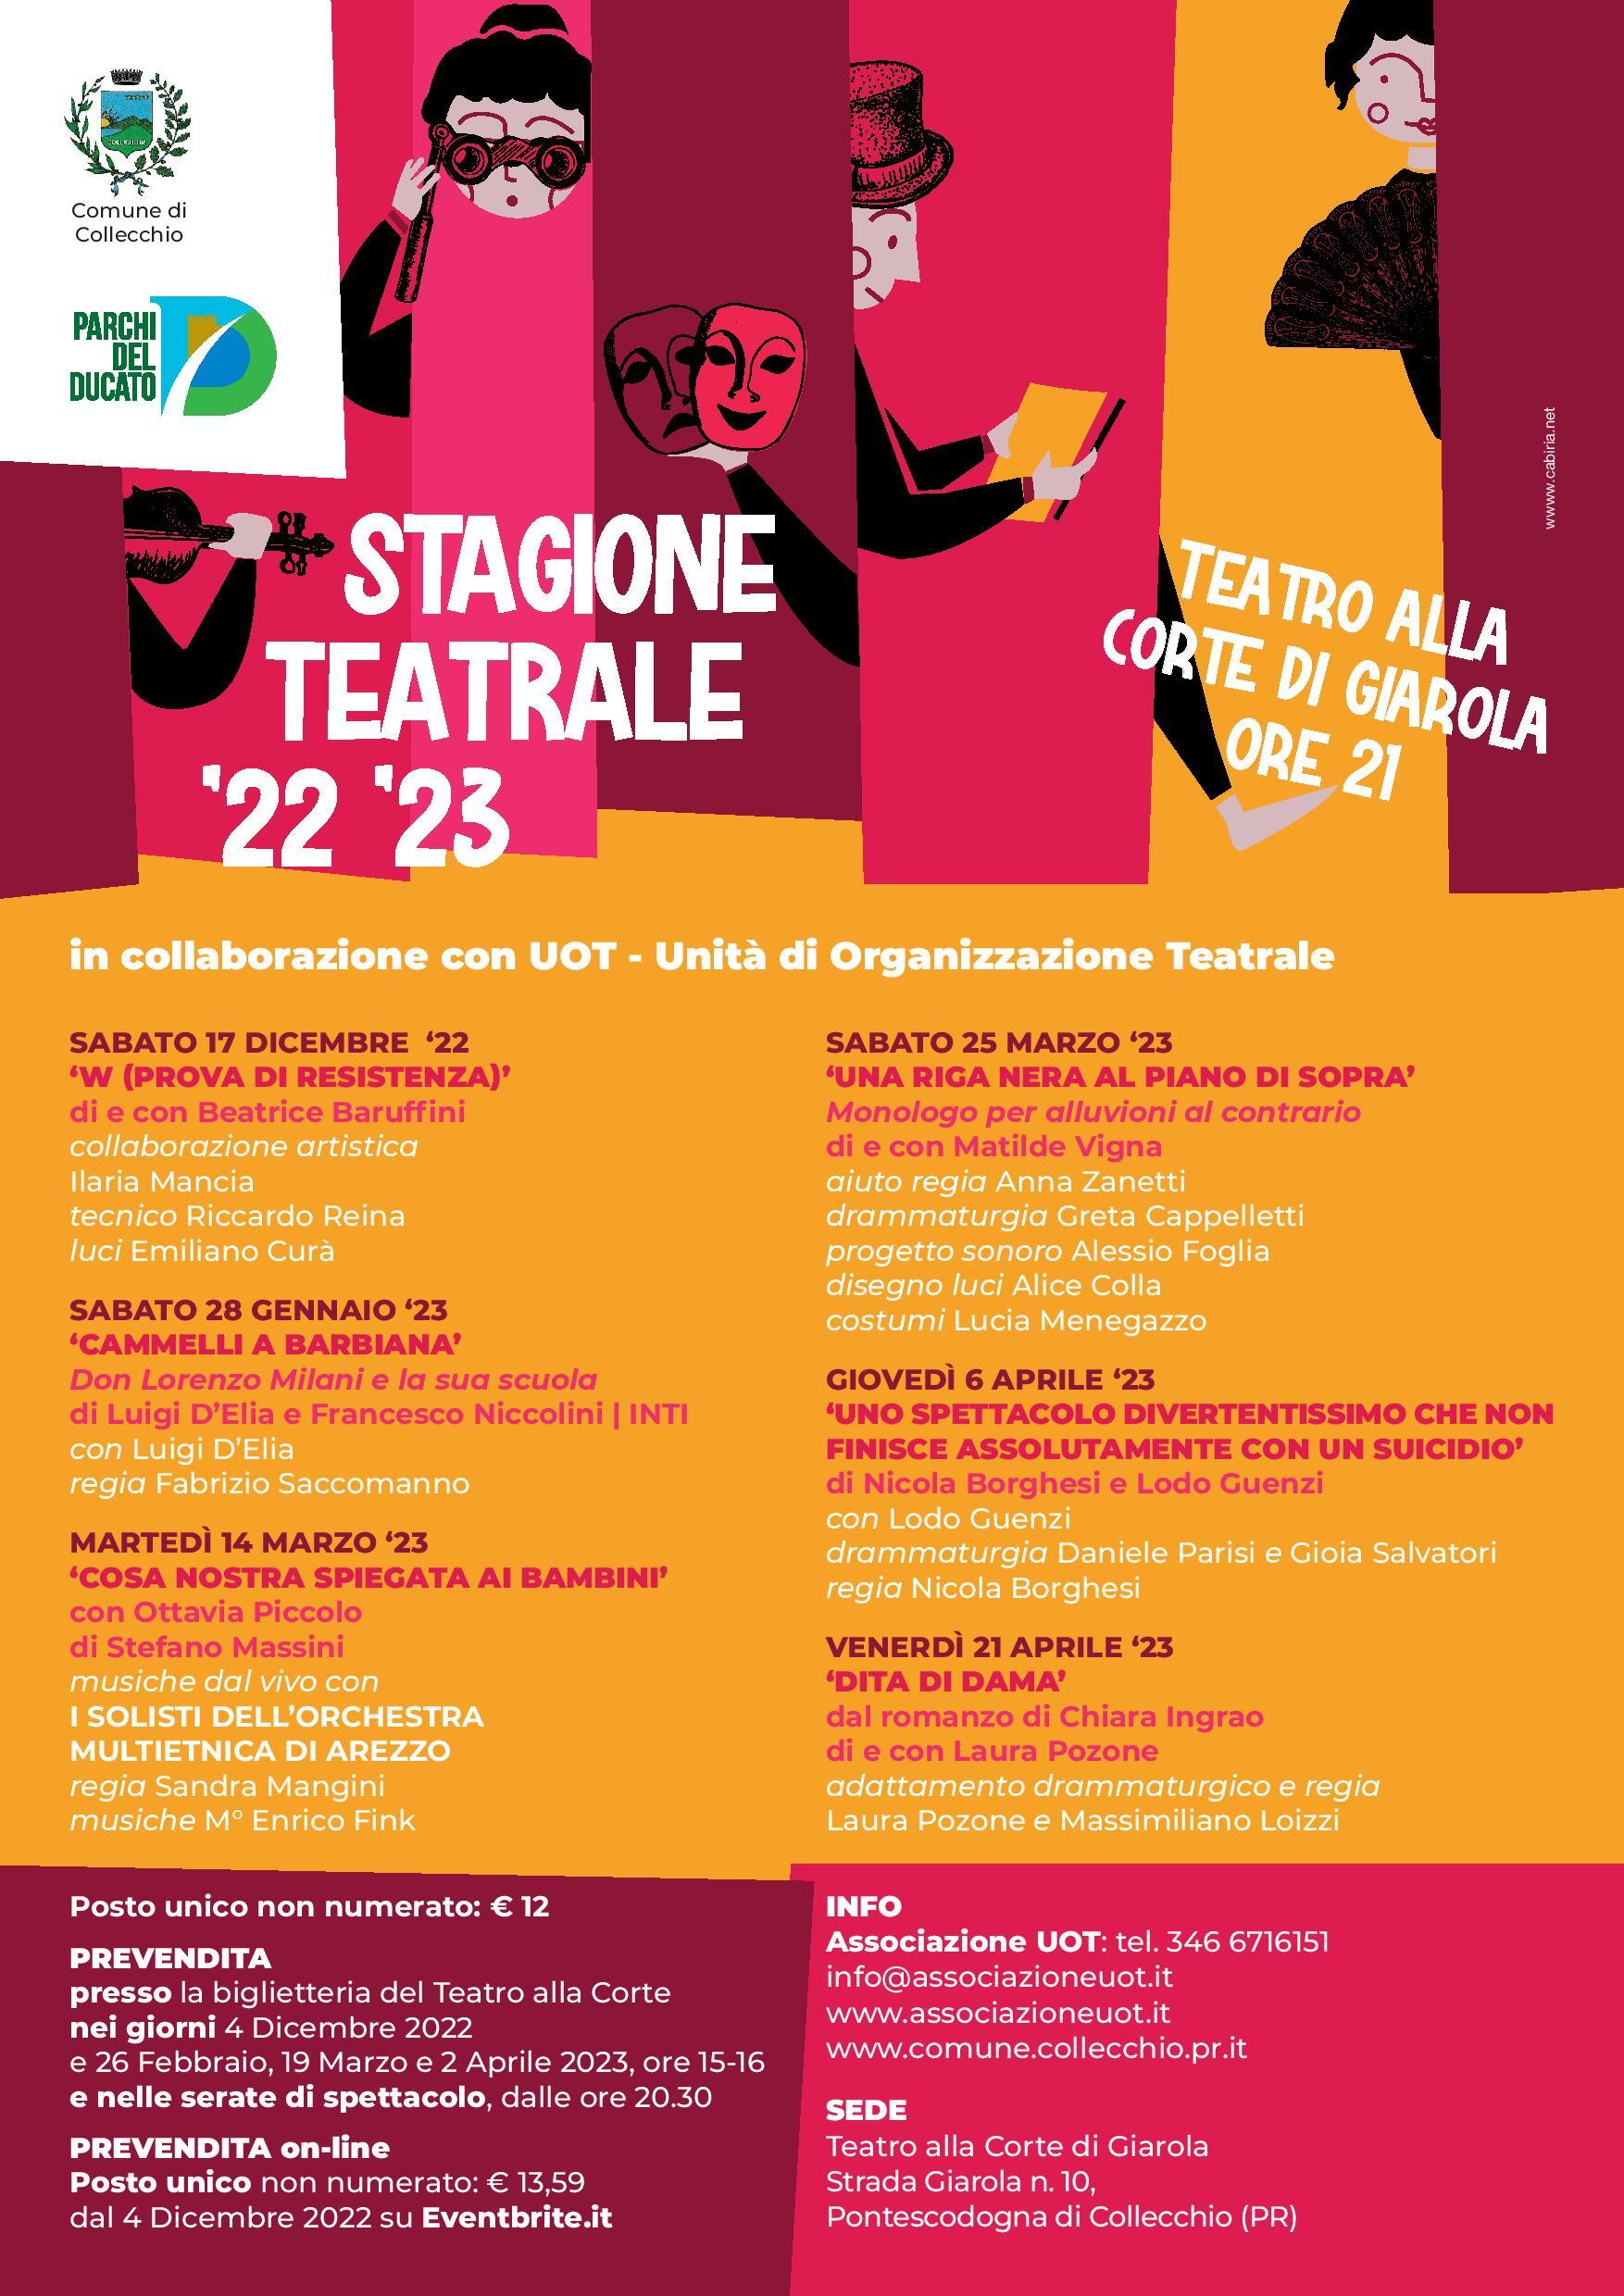 Teatro alla Corte di Giarola: stagione teatrale 2022-2023